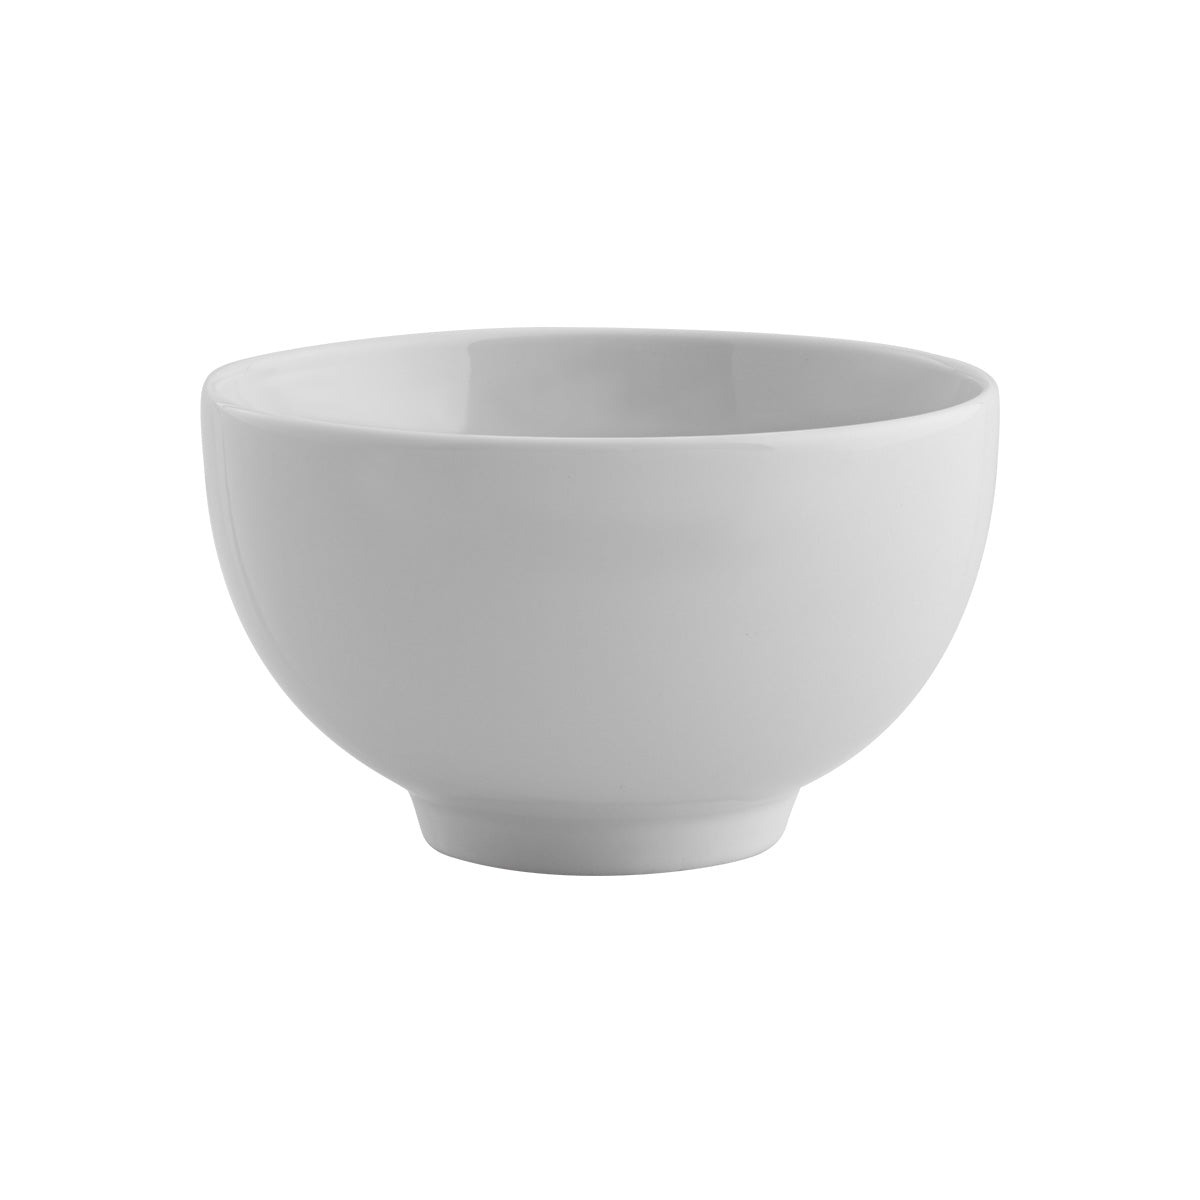 Bowl blanco 11 cm - 334 ml Kyoto